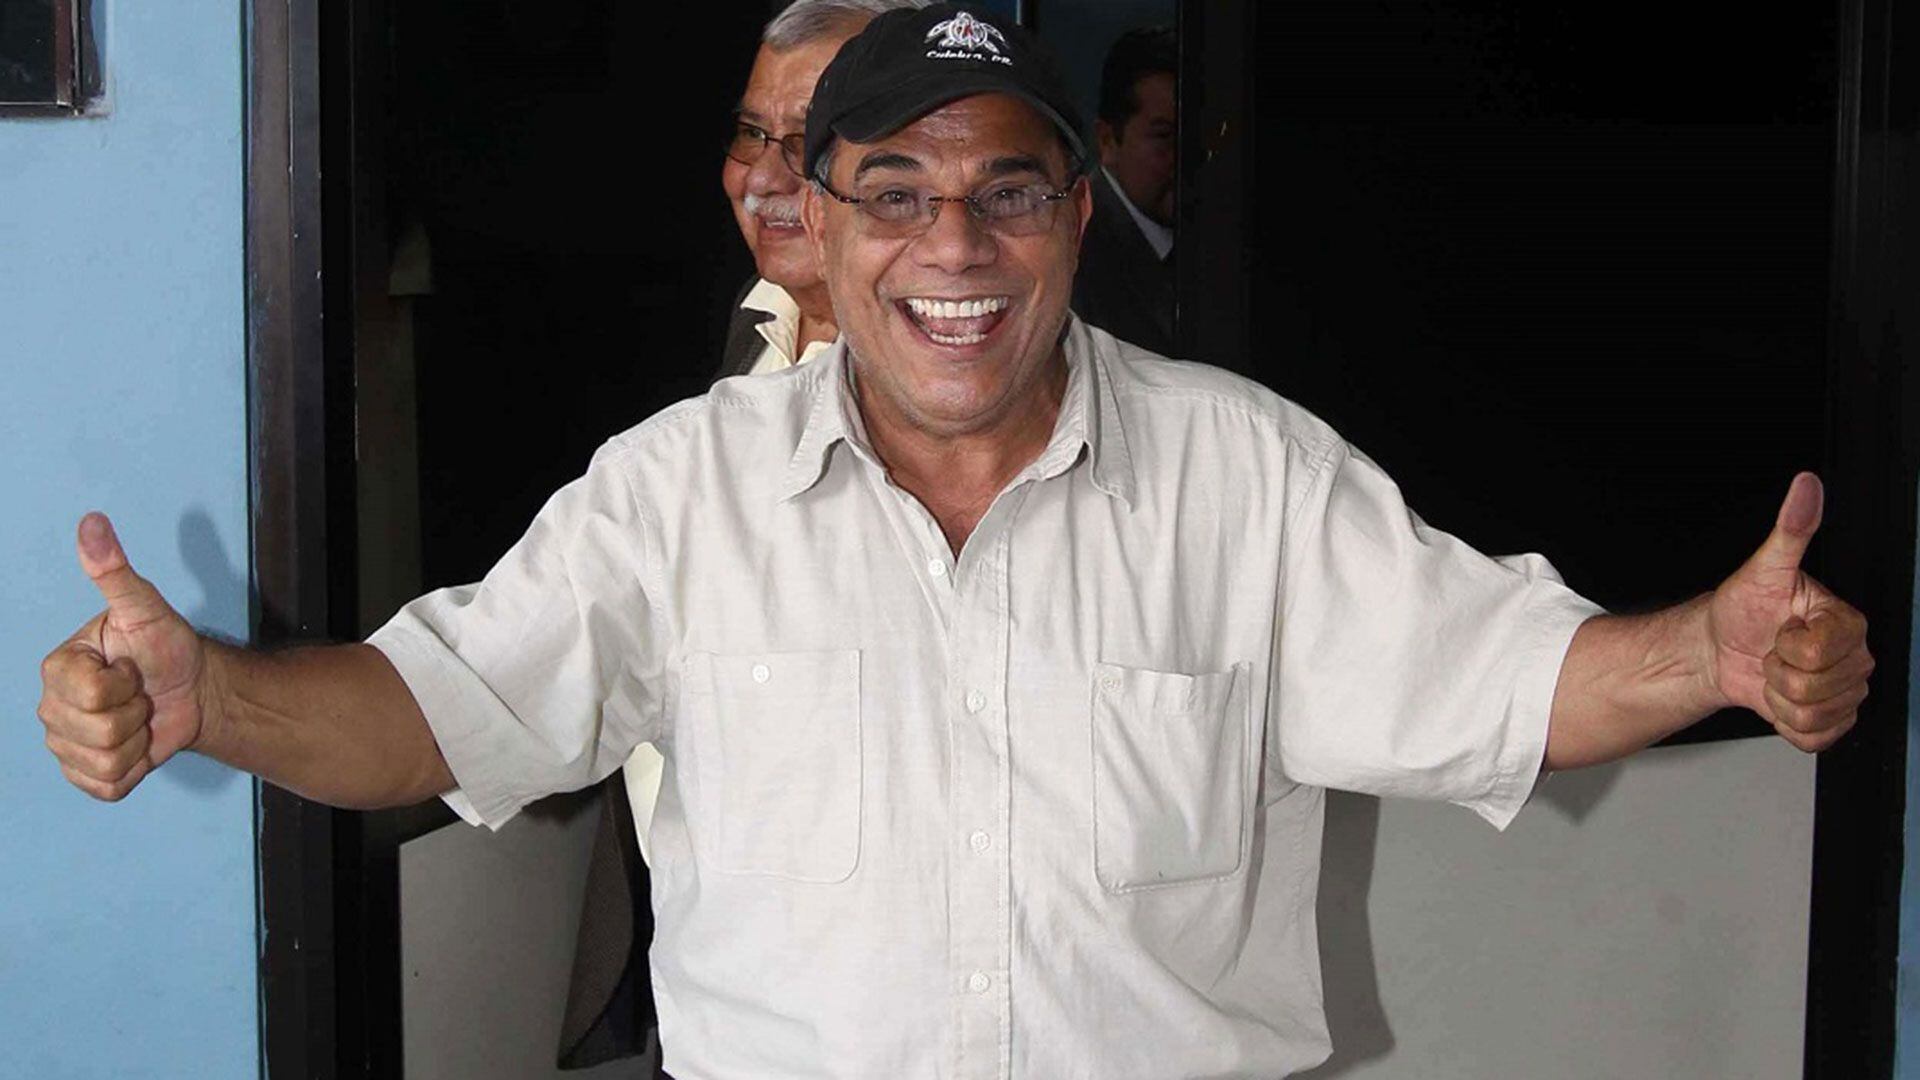 José Adán Salazar Umaña, alias Chepe Diablo, señalado como uno de los principales líderes del narcotráfico en El Salvador, ha evadido a la justicia gracias al apoyo de fiscales y jueces, entre ellos el actual fiscal general de El Salvador.